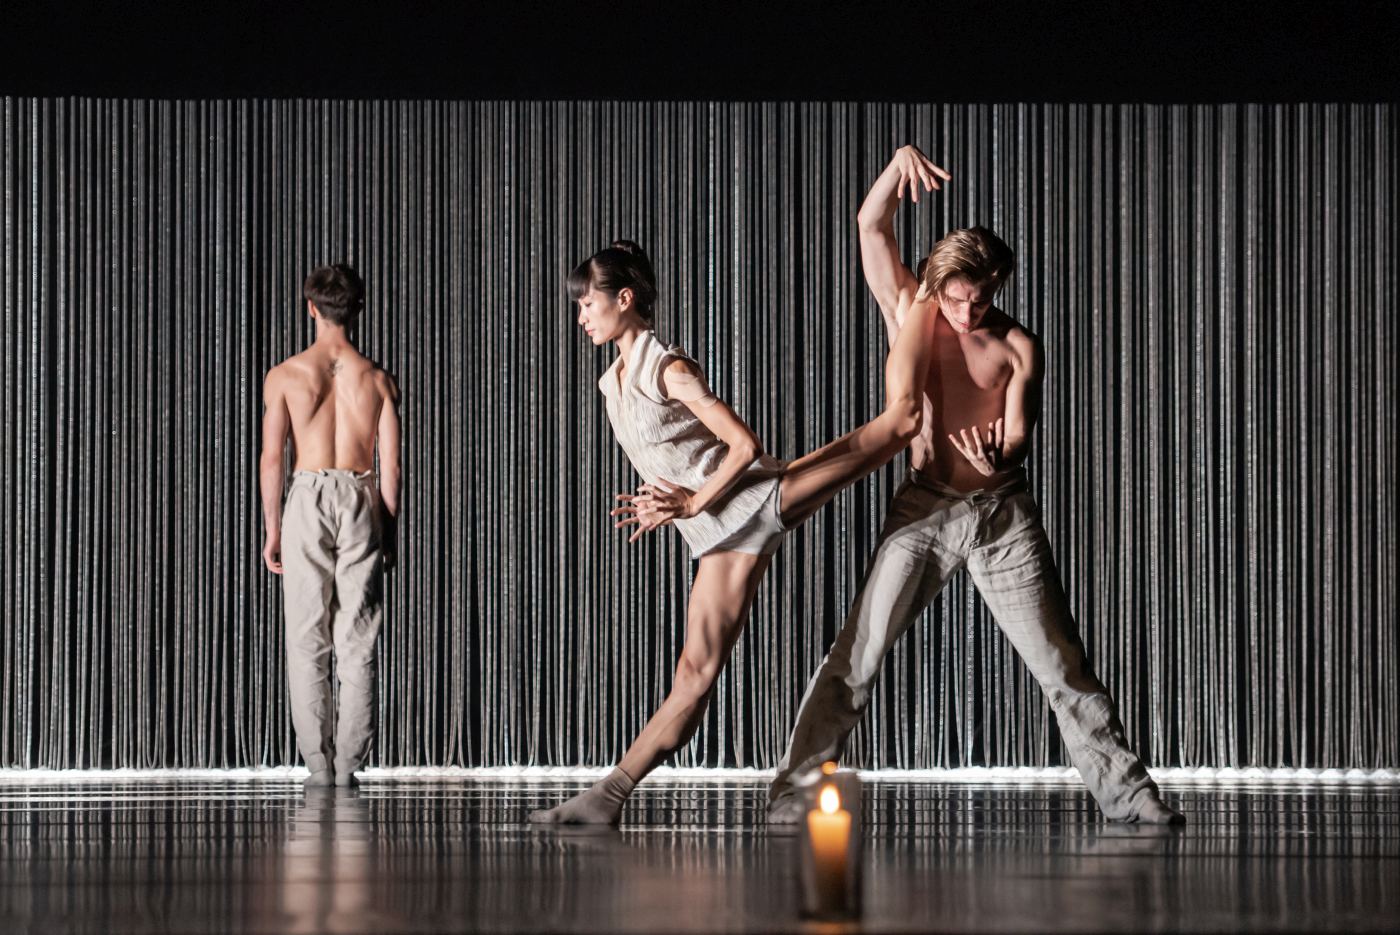 5. A.Watanabe and J.Rašek, “Gods and Dogs” by J.Kylián, Czech National Ballet 2022 